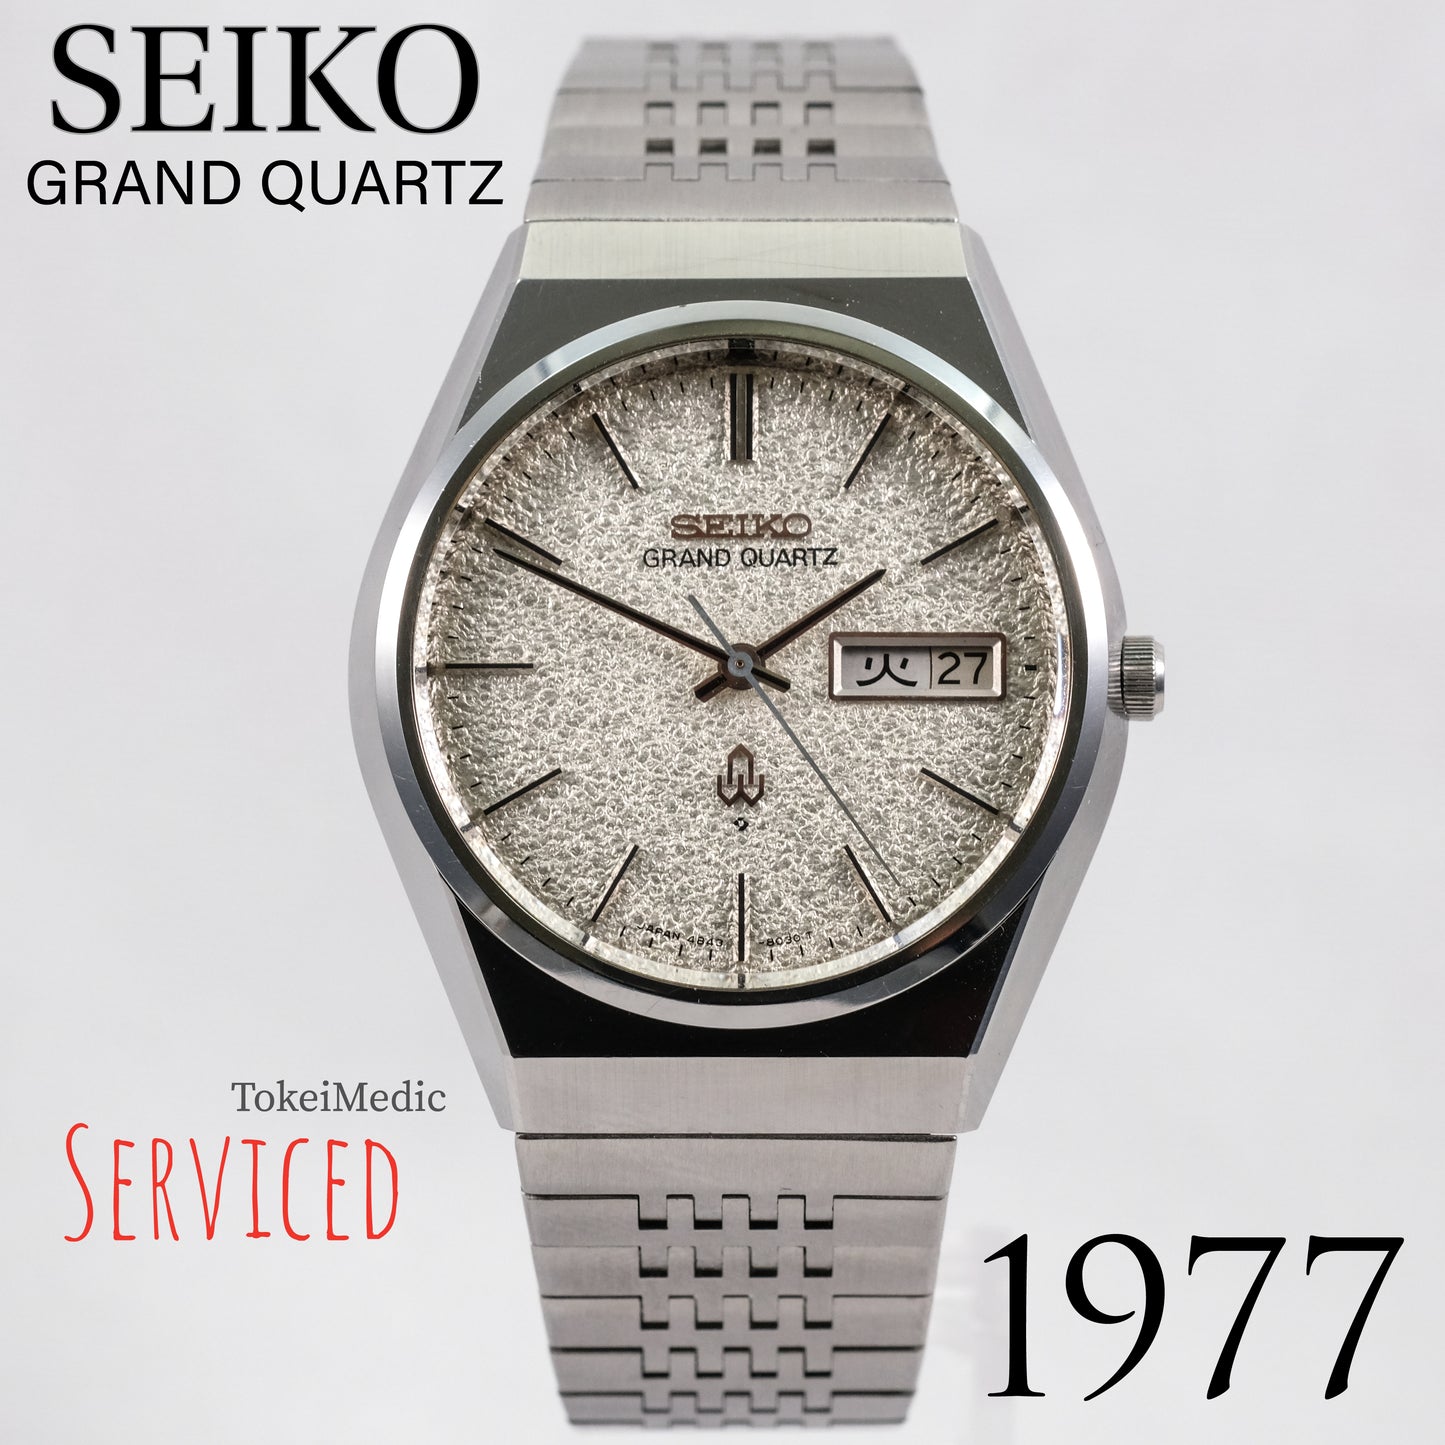 Reserved! 1977 Seiko Grand Quartz 4843-8100